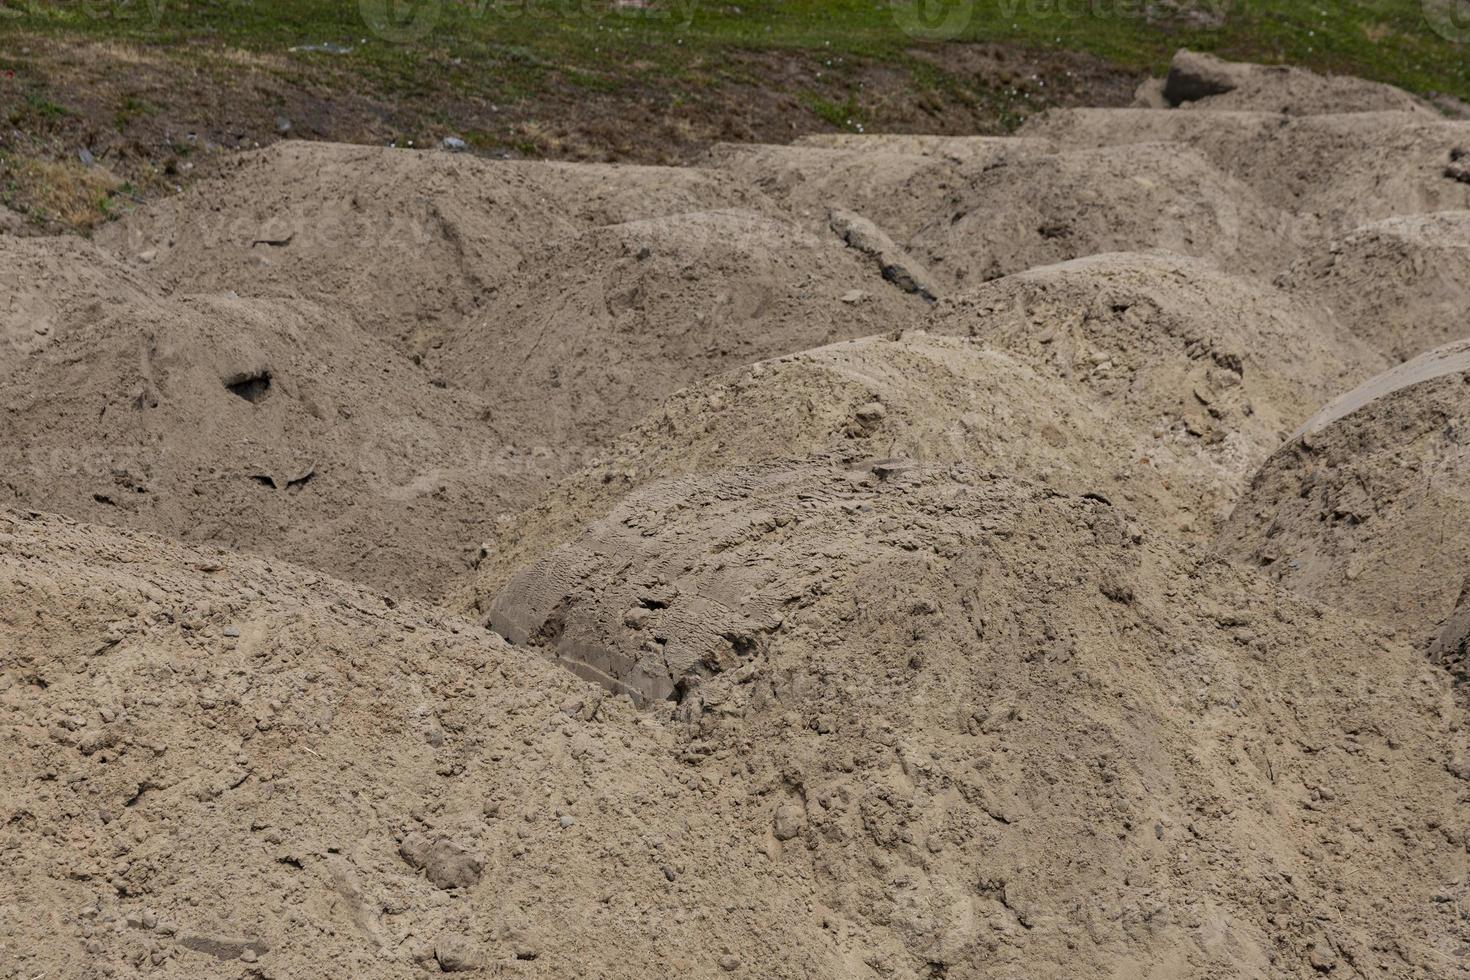 une montagne de sable sur un chantier de construction. matériau de base. le sol est préparé pour renforcer le sol. tas de terre. sable fin pour le nivellement et le remblayage photo